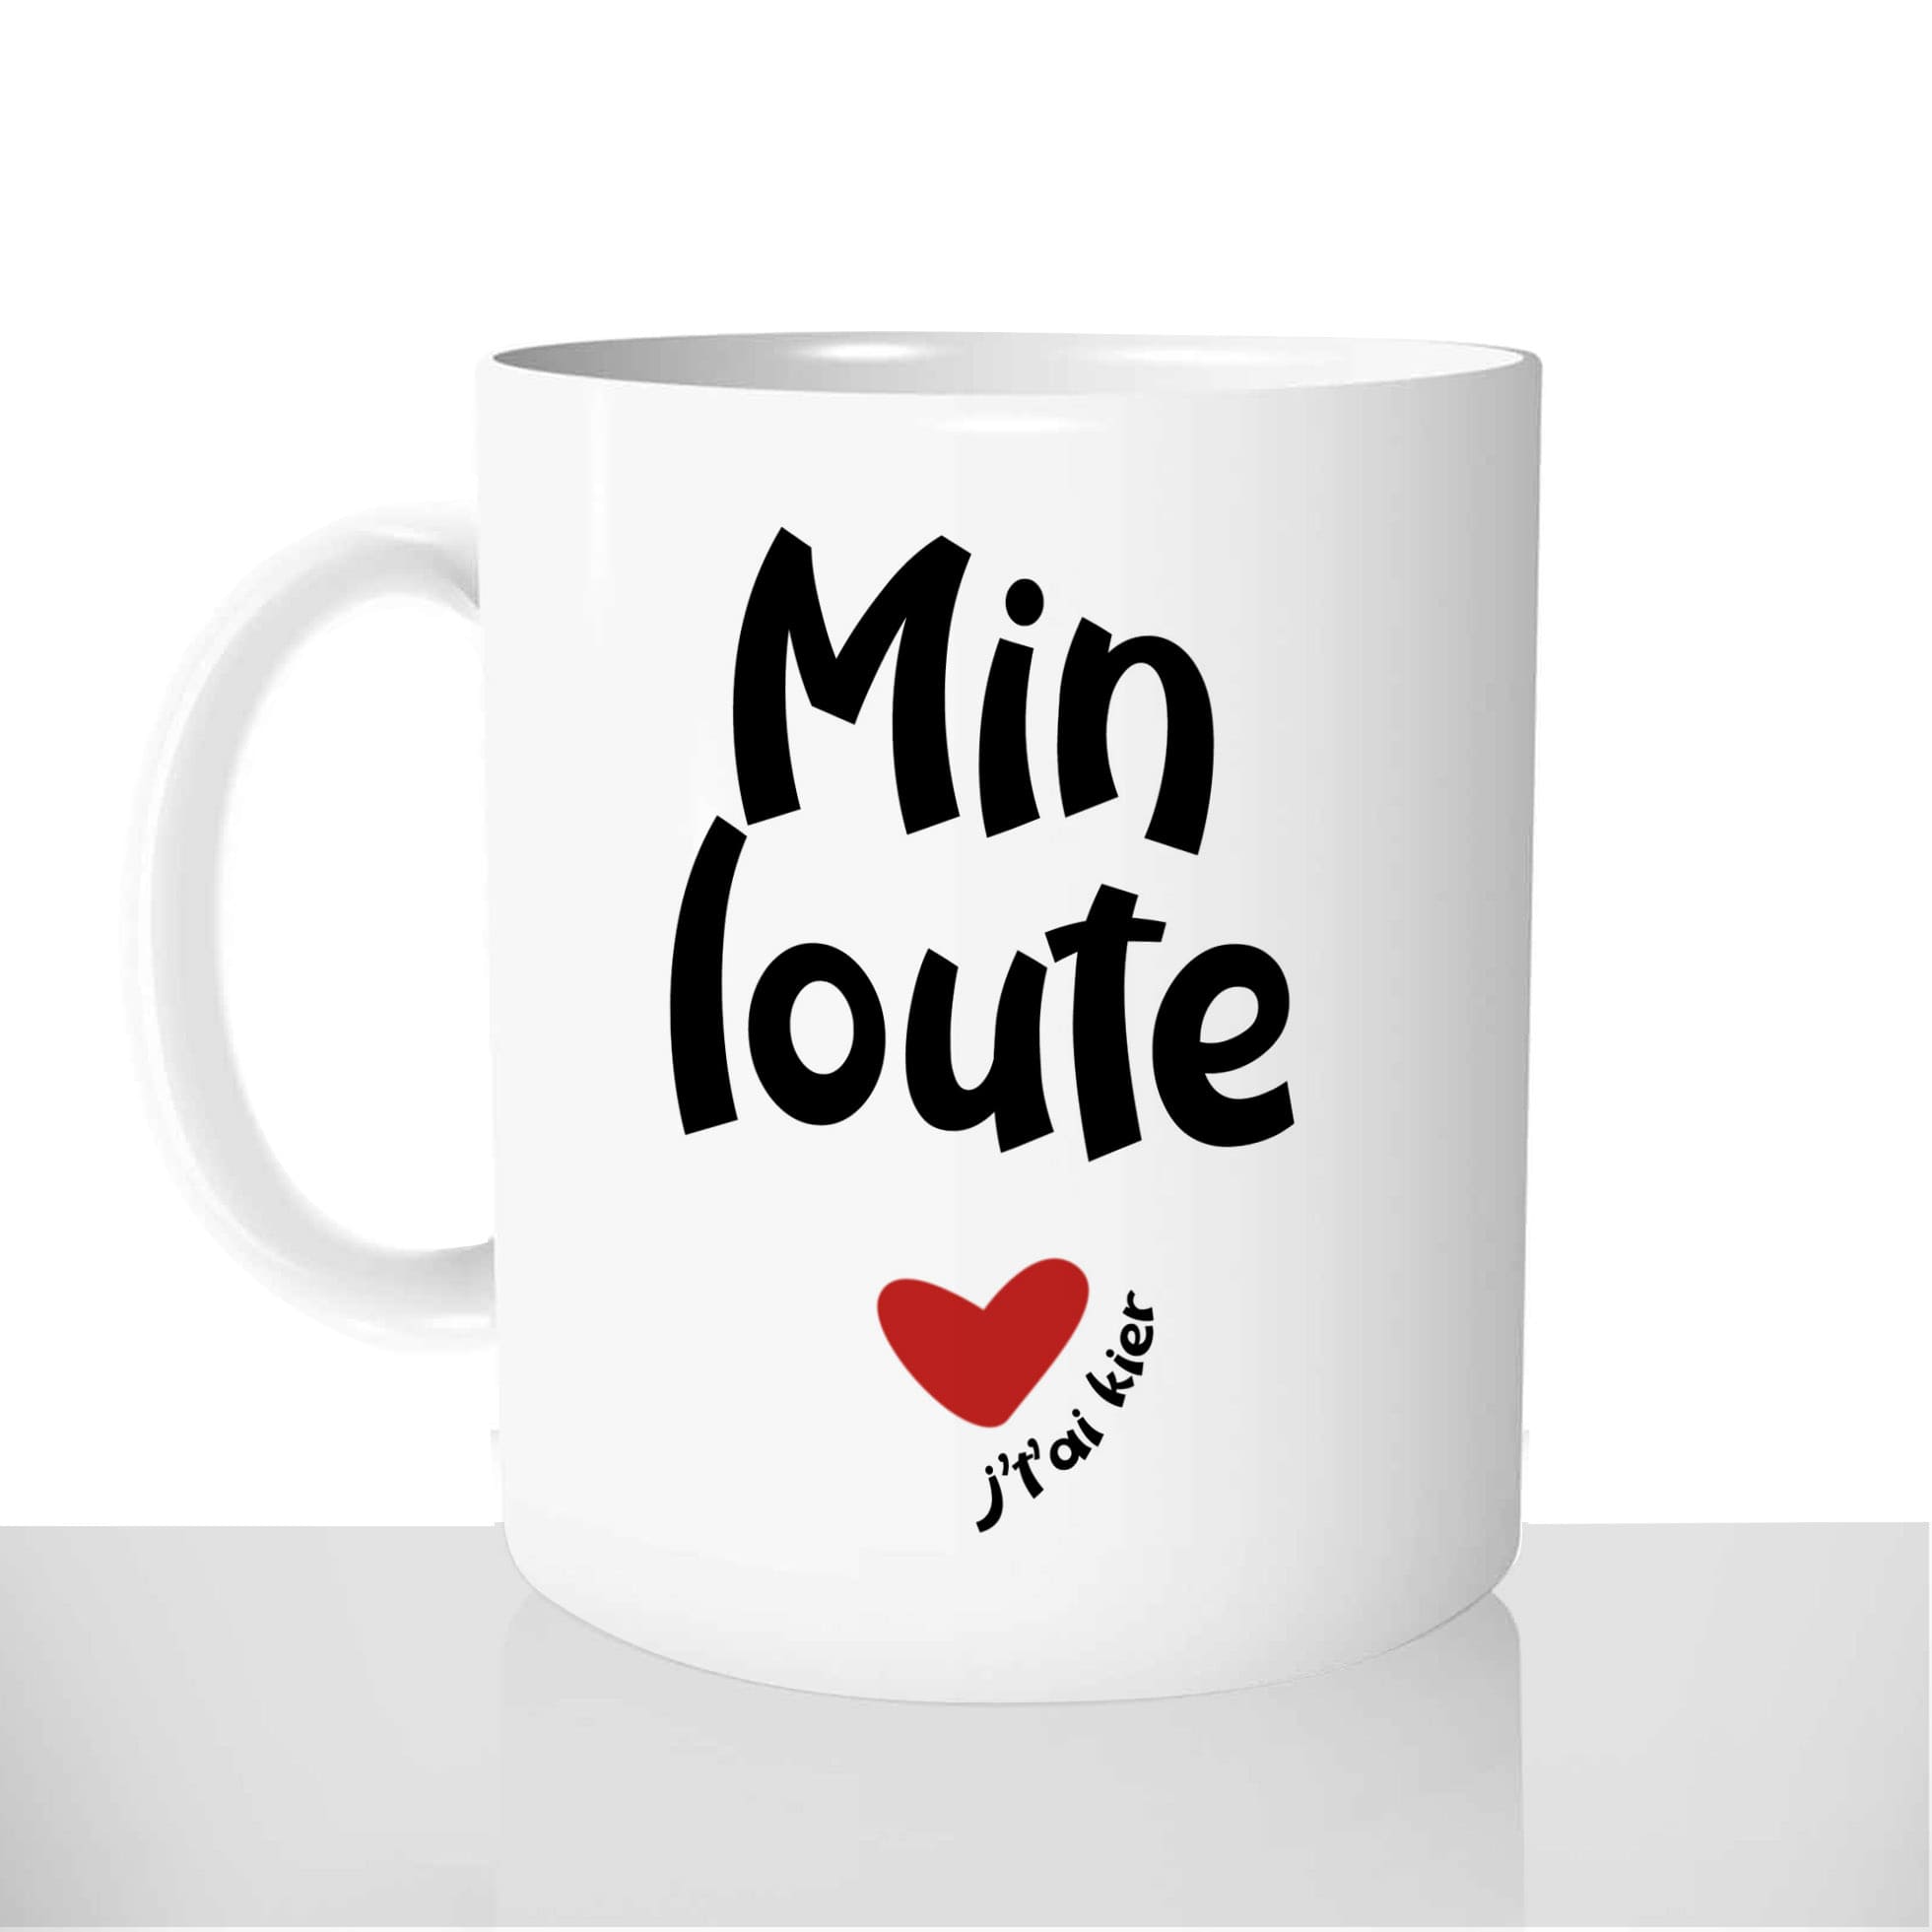 mug-blanc-céramique-11oz-france-mugs-surprise-pas-cher-min-loute-jtai-kier-chti-amour-chtimi-couple-nord-pas-de-calais